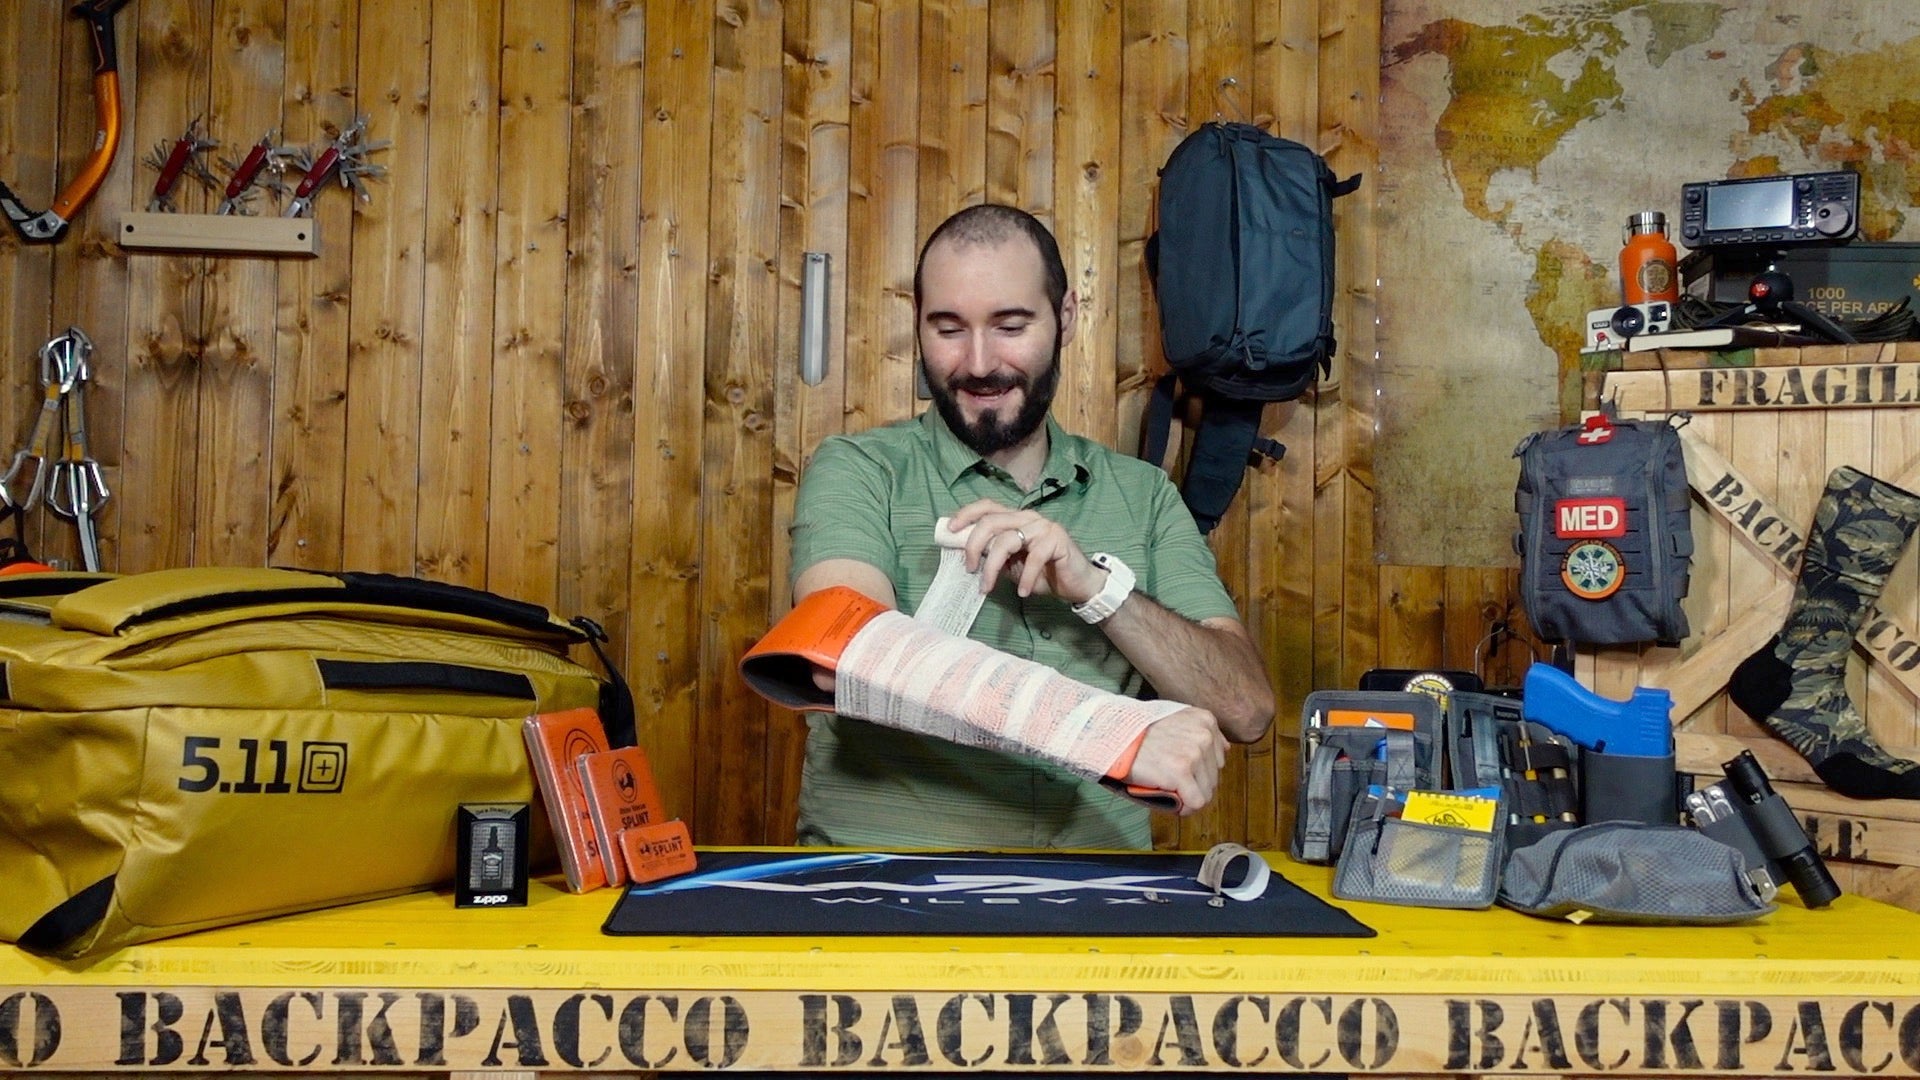 Paolo di Backpacco spiega ll'elastic crepe e gli splint di rhino rescue